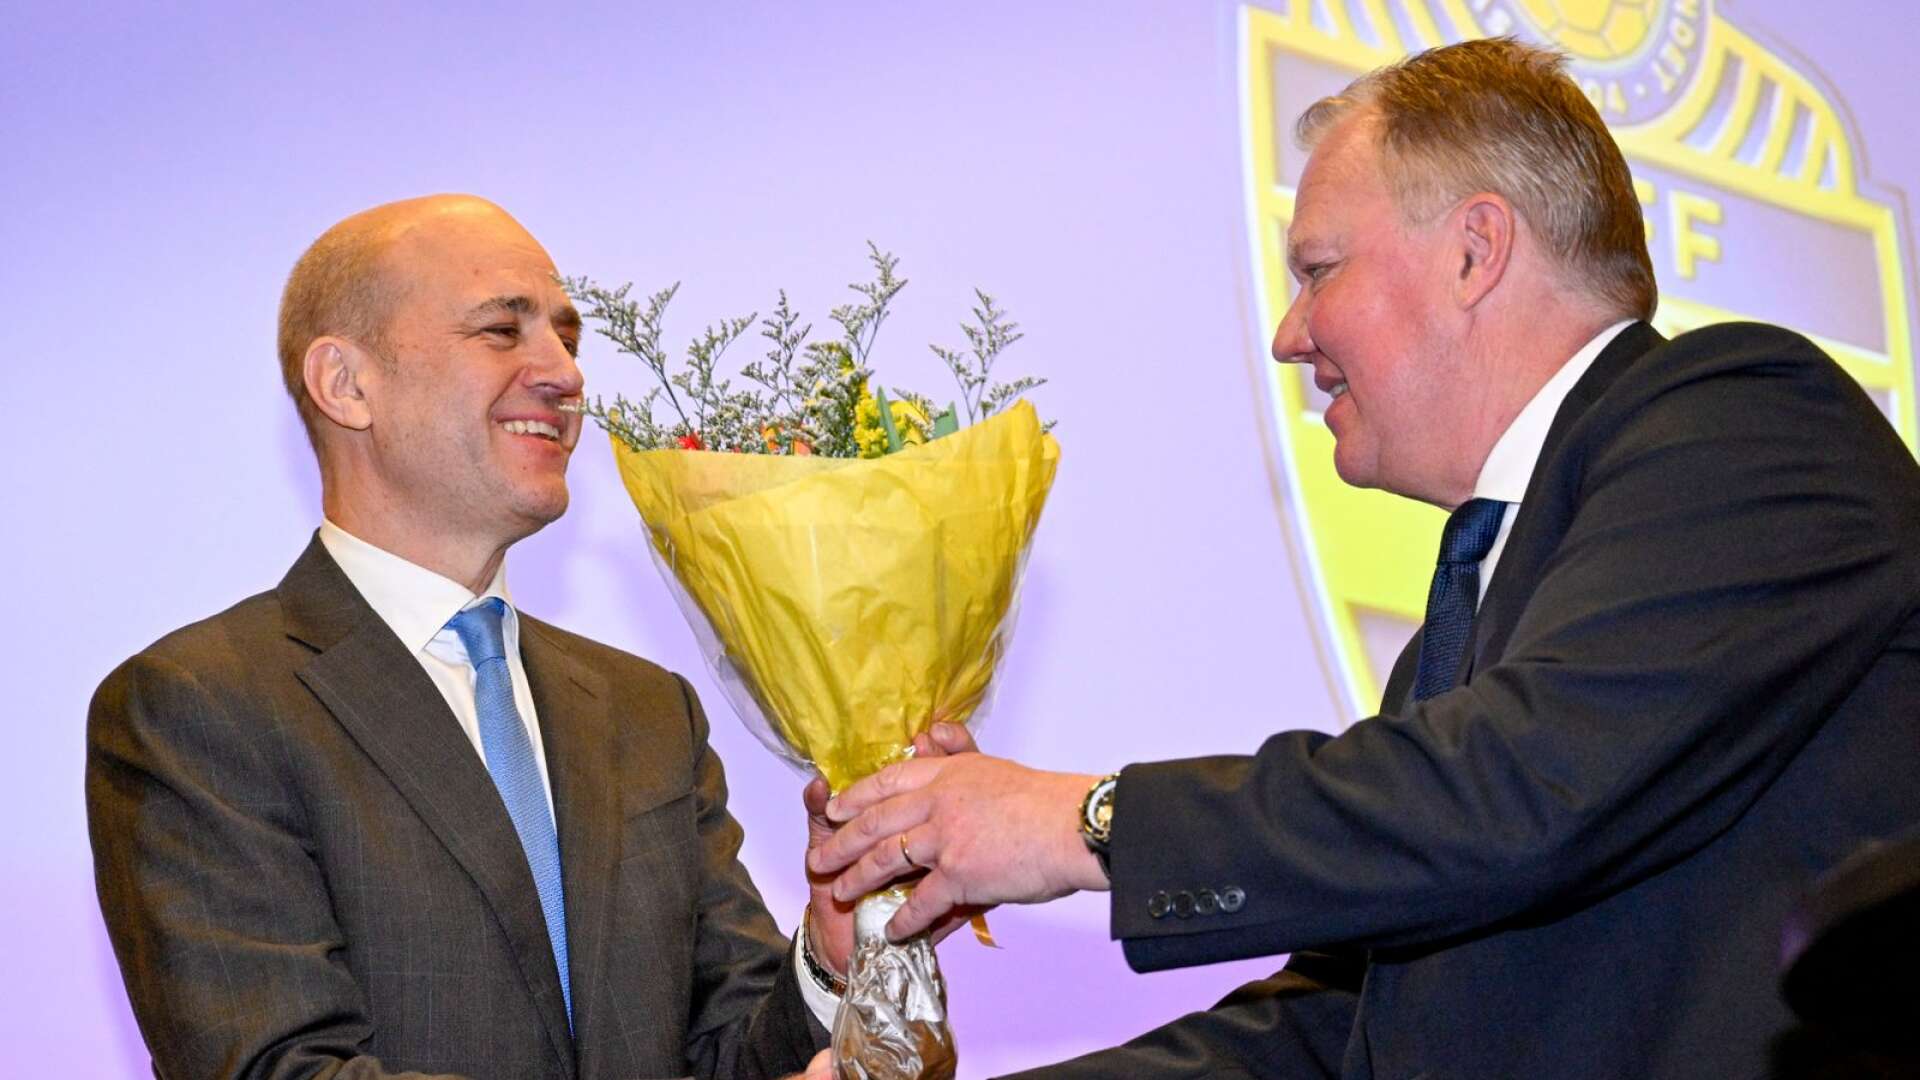 Fredrik Reinfeldt är vald till ny ordförande i Svenska fotbollförbundet och får blommor av avgående Karl-Erik Nilsson .